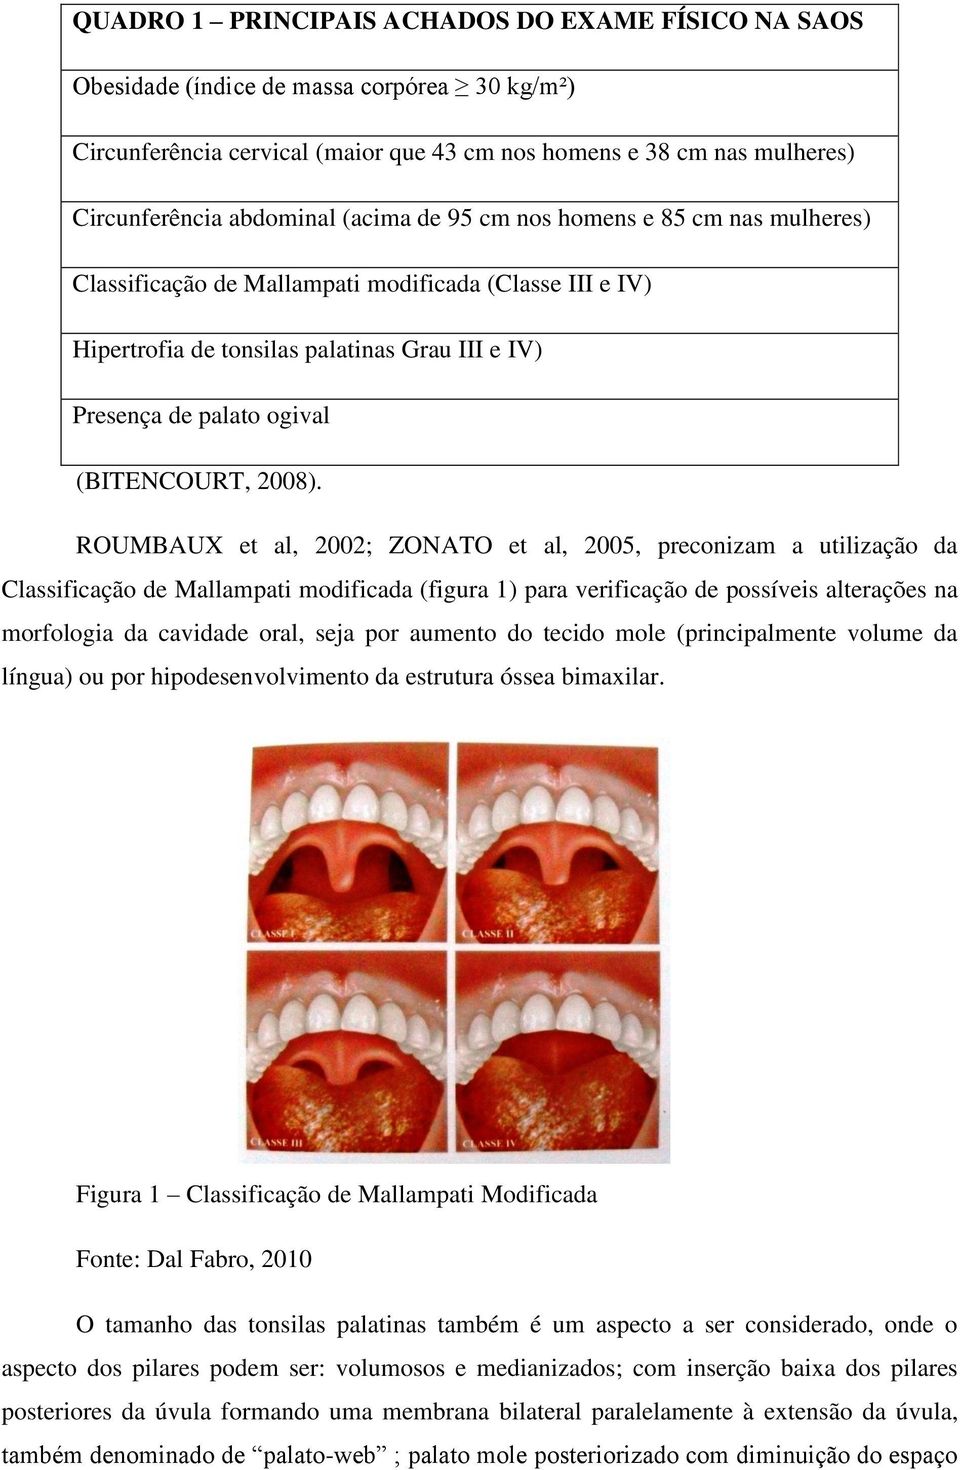 ROUMBAUX et al, 2002; ZONATO et al, 2005, preconizam a utilização da Classificação de Mallampati modificada (figura 1) para verificação de possíveis alterações na morfologia da cavidade oral, seja